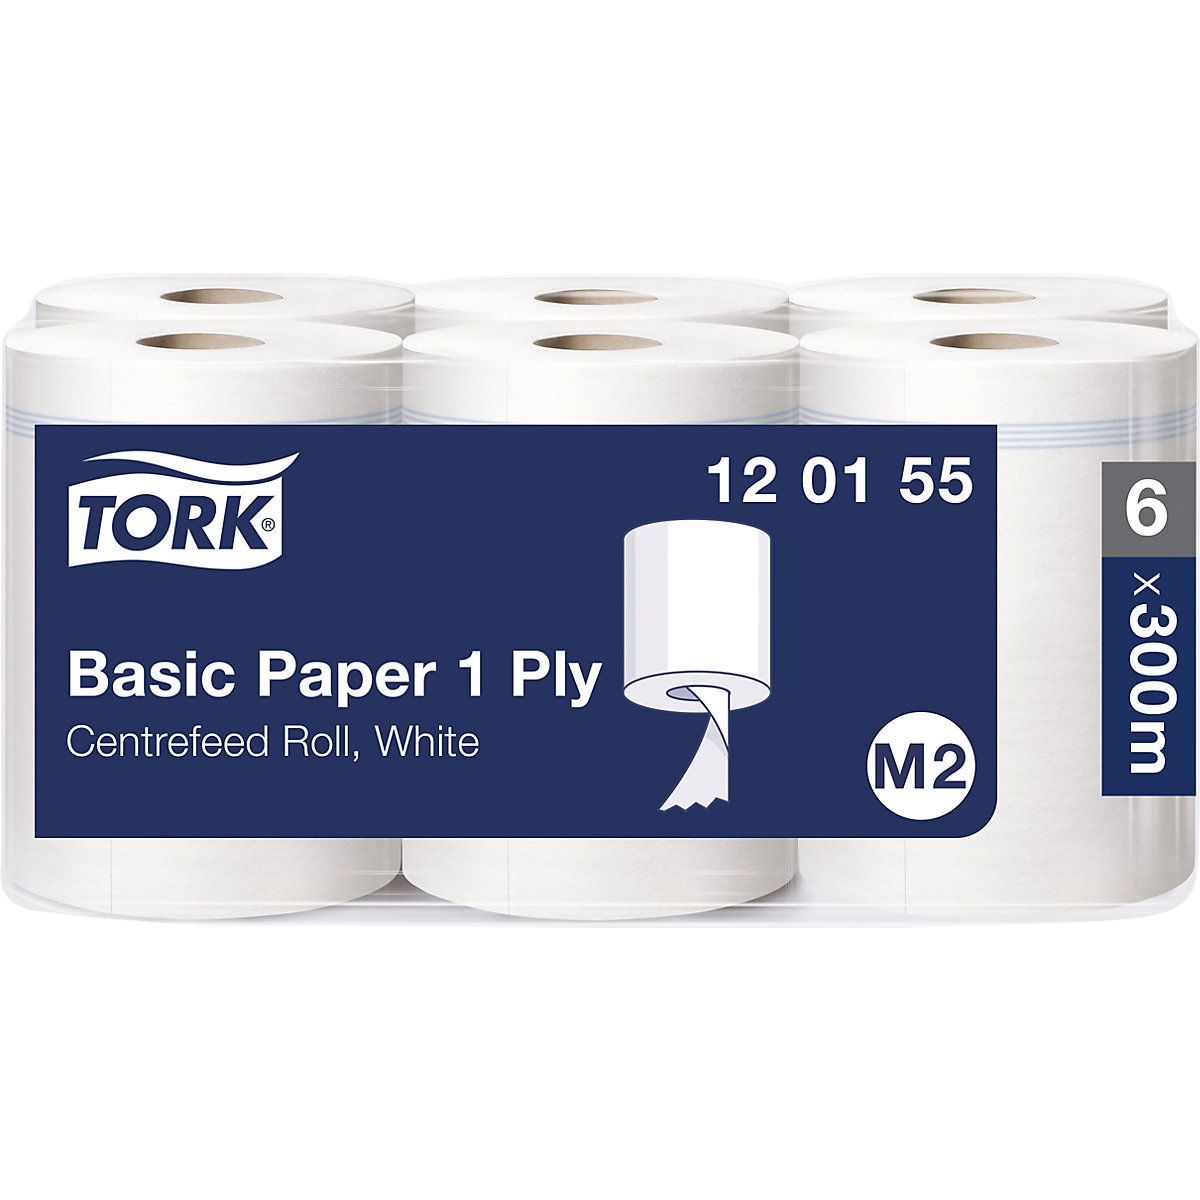 Standardne papirnate krpe, notranje odvijanje – TORK